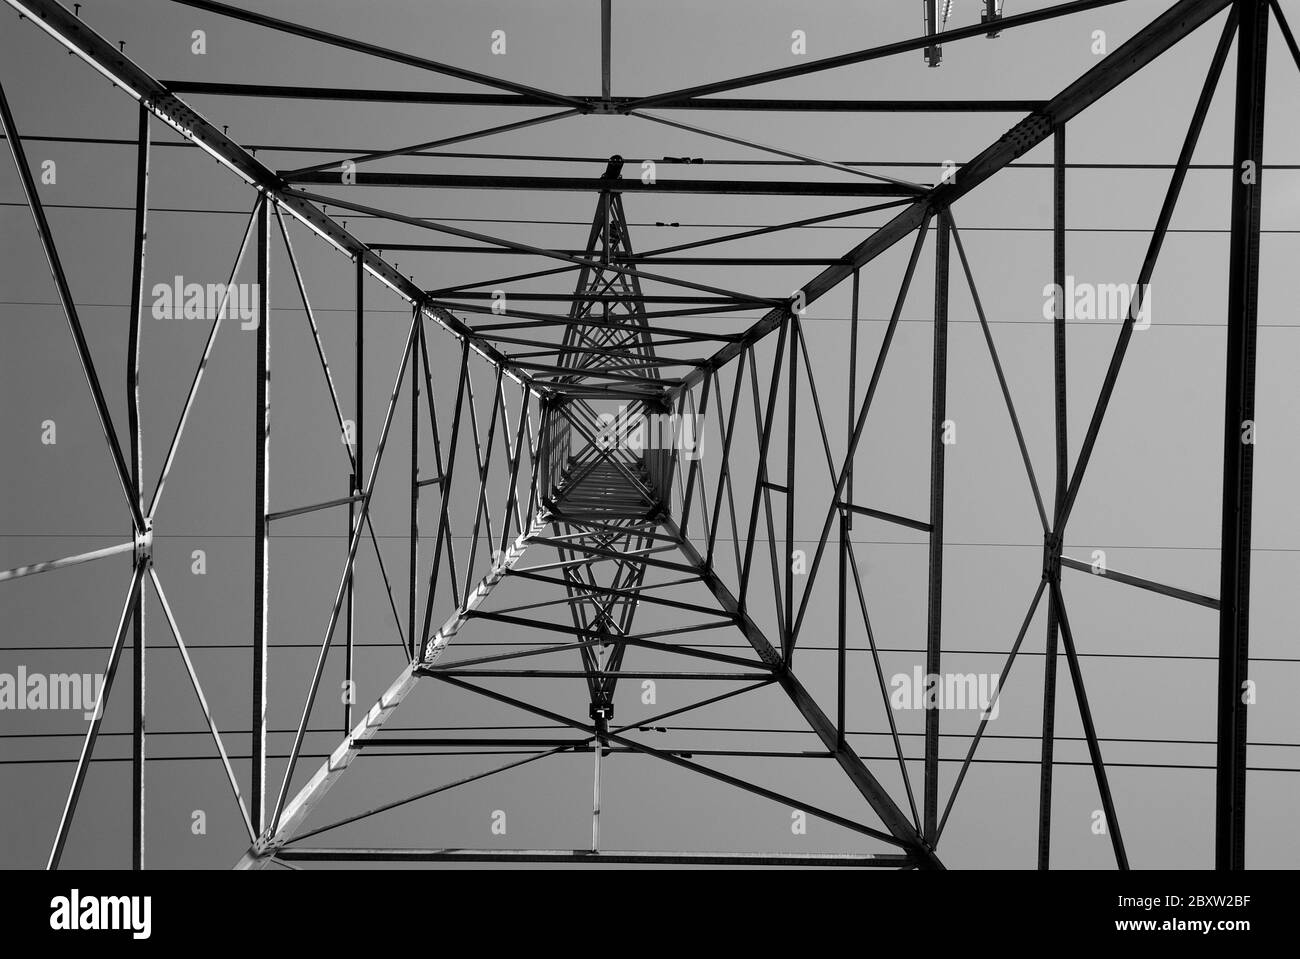 GRIDLOCK: Uno sguardo verticale a 90 gradi alle torri elettriche ad alta tensione dei giorni nostri. Foto Stock